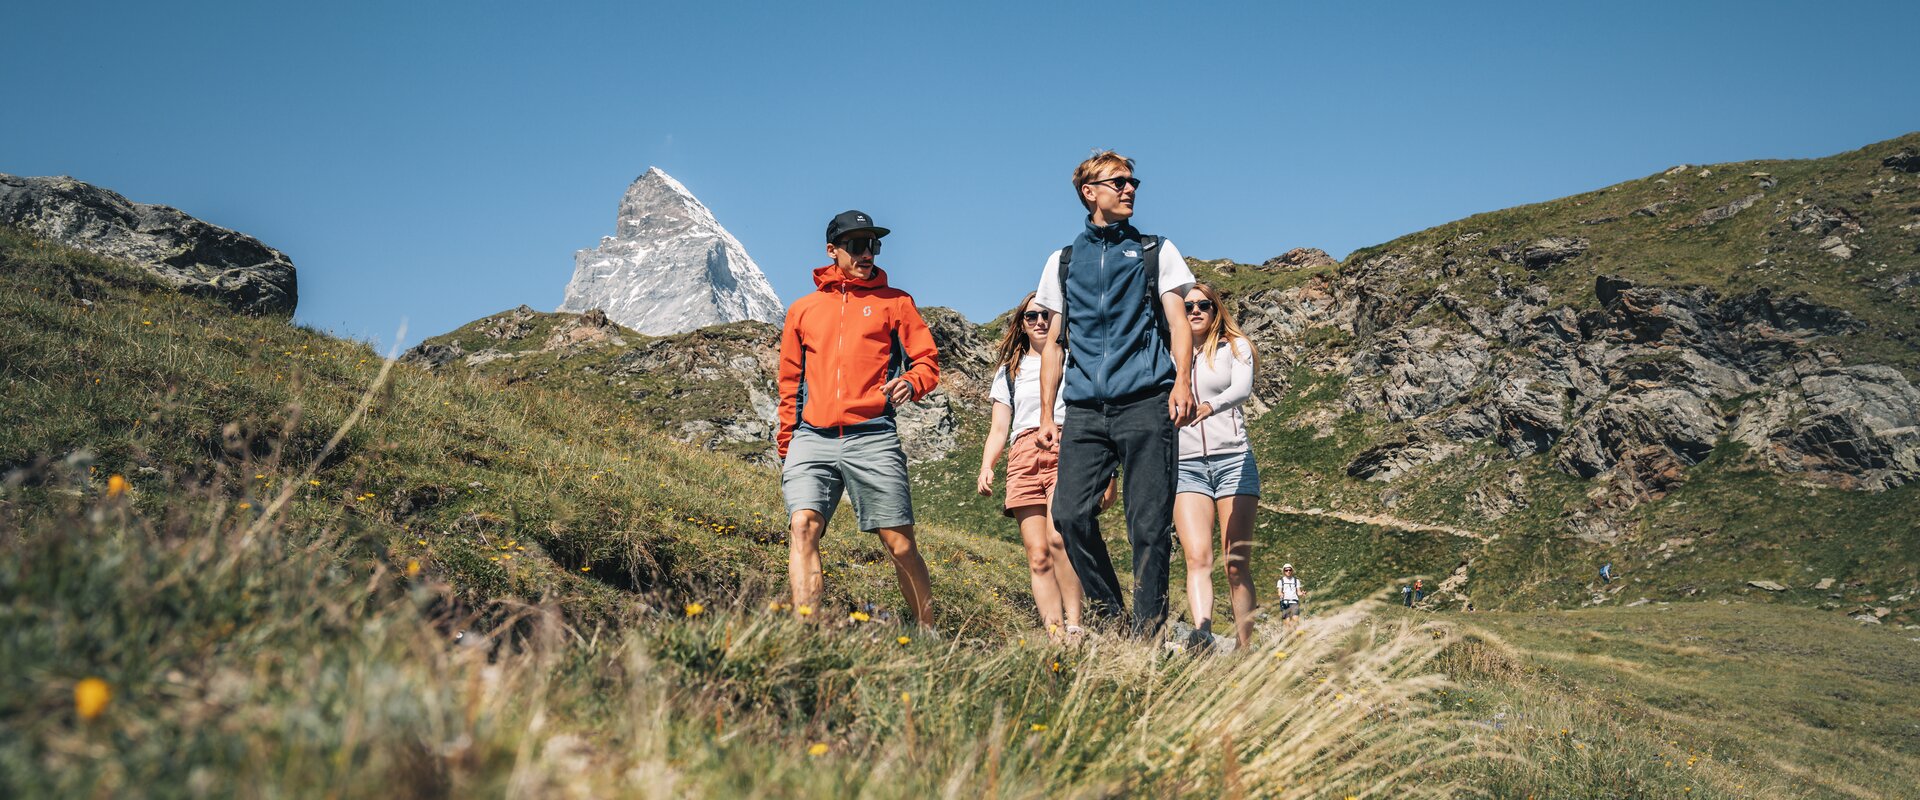 Wandern mit Freunden auf dem Schwarzsee mit dem Matterhorn im Hintergrund | © Gabriel Perren